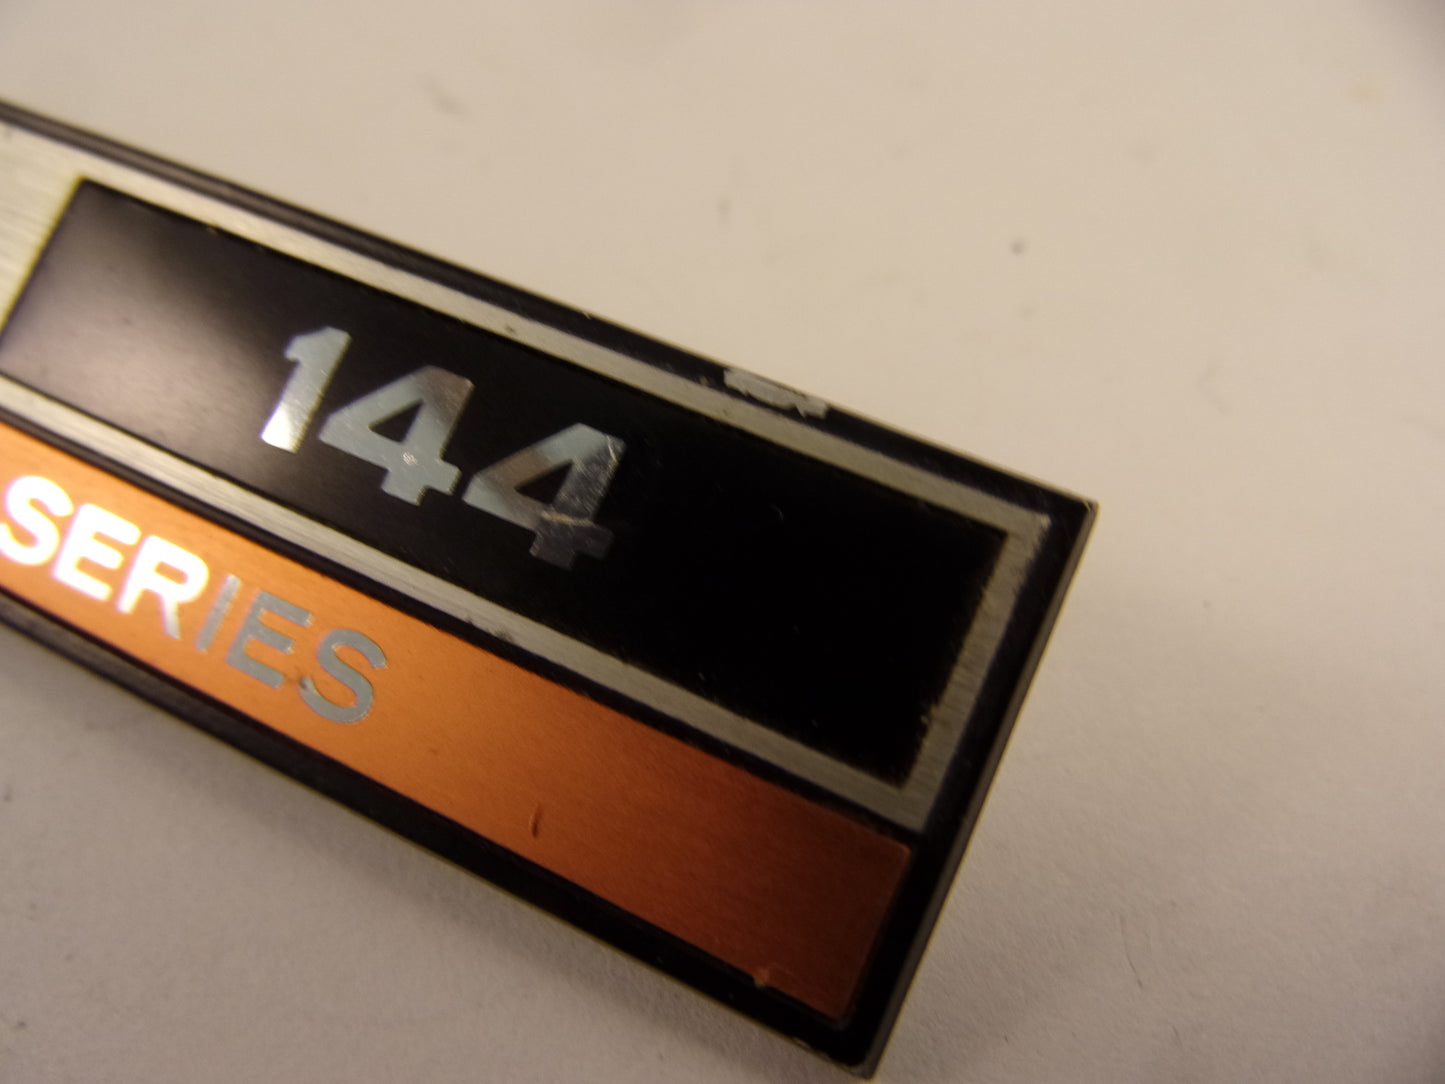 Tascam 144 badge